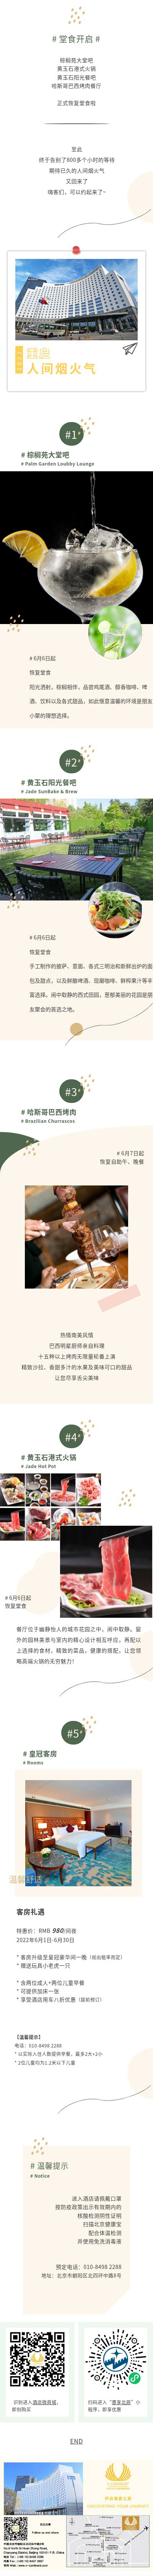 北京 | 北京北辰五洲皇冠国际酒店 堂食开启 美味回归